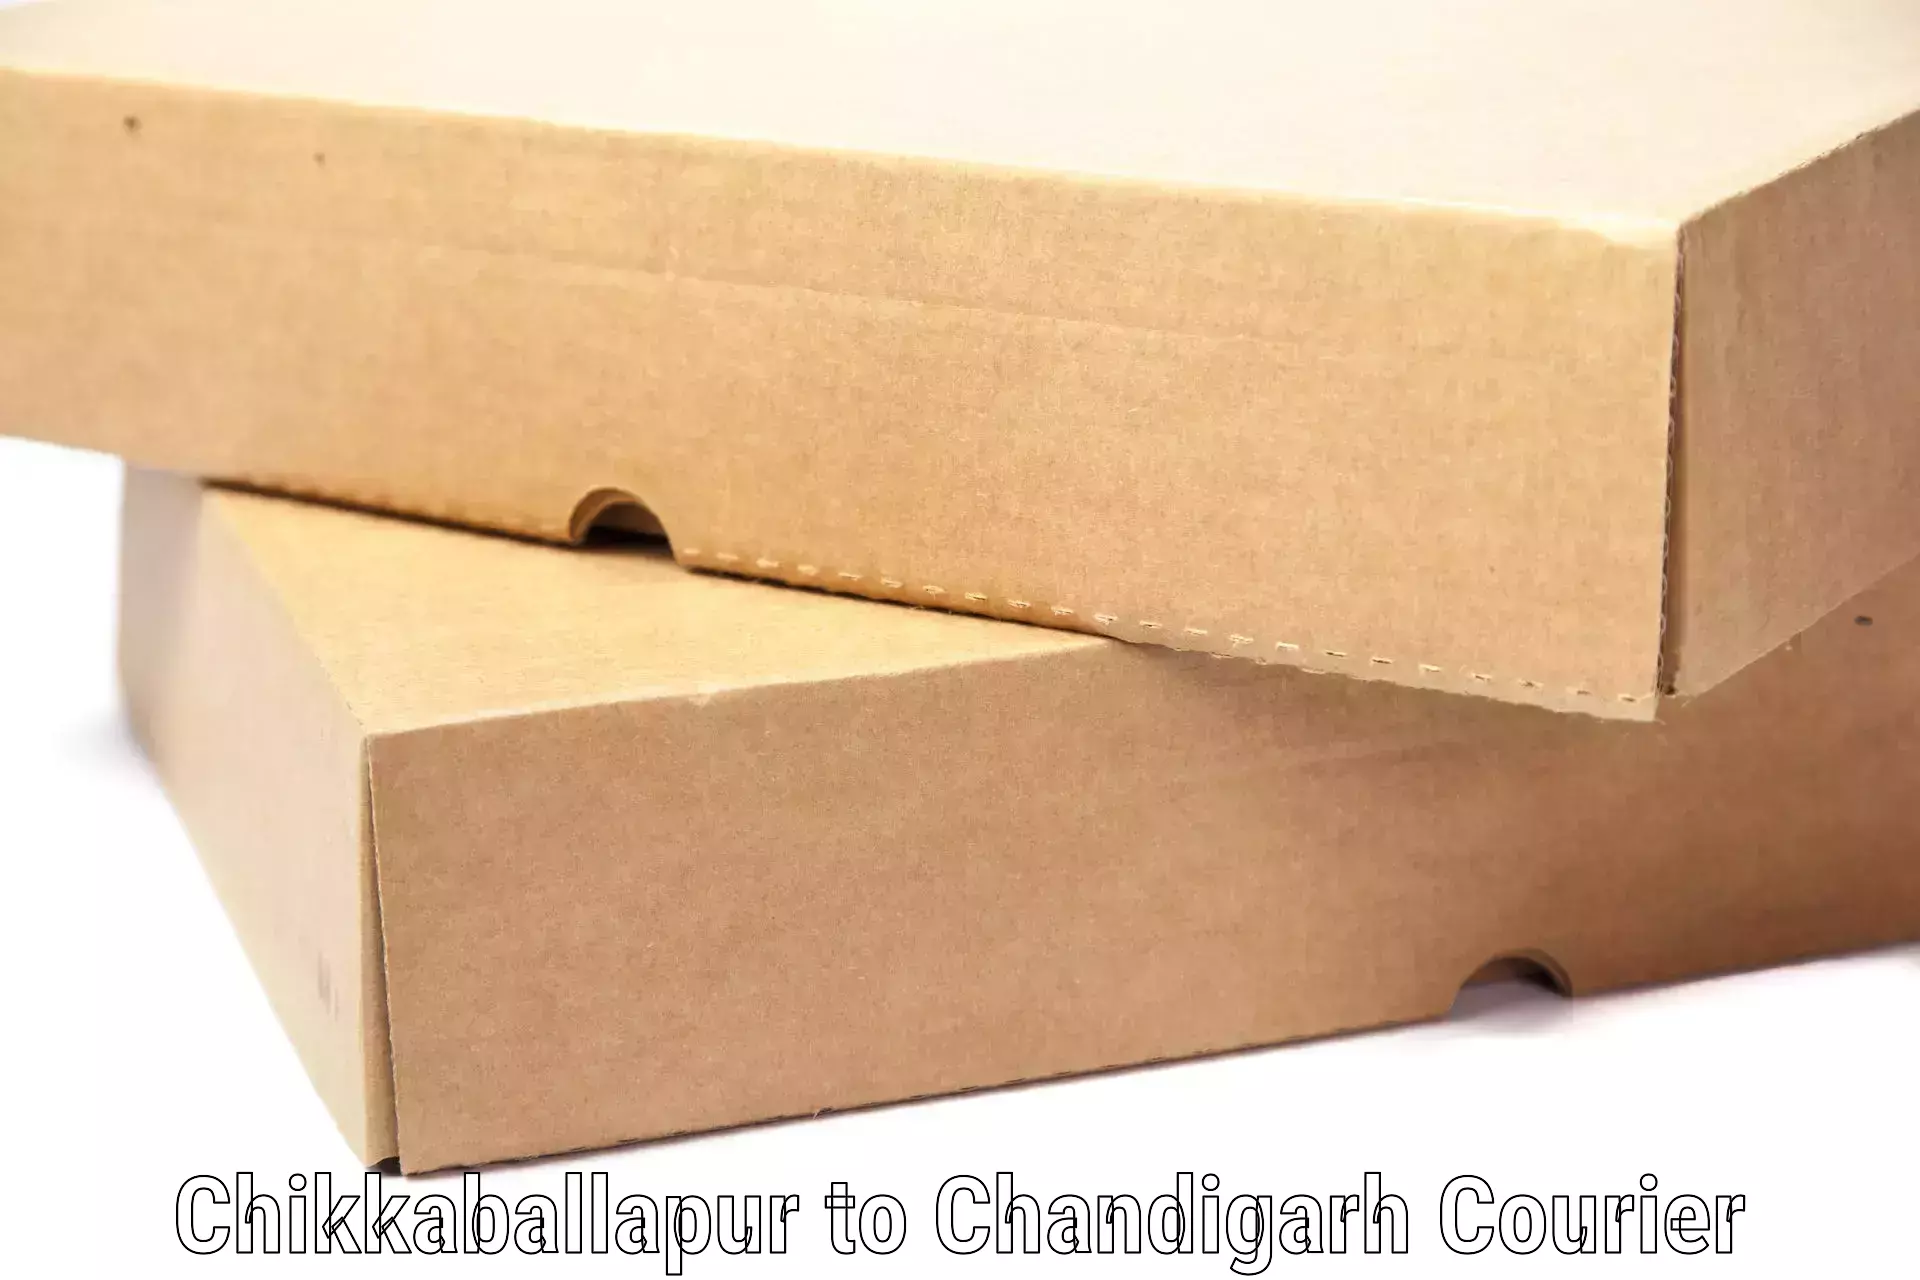 Baggage transport scheduler Chikkaballapur to Chandigarh